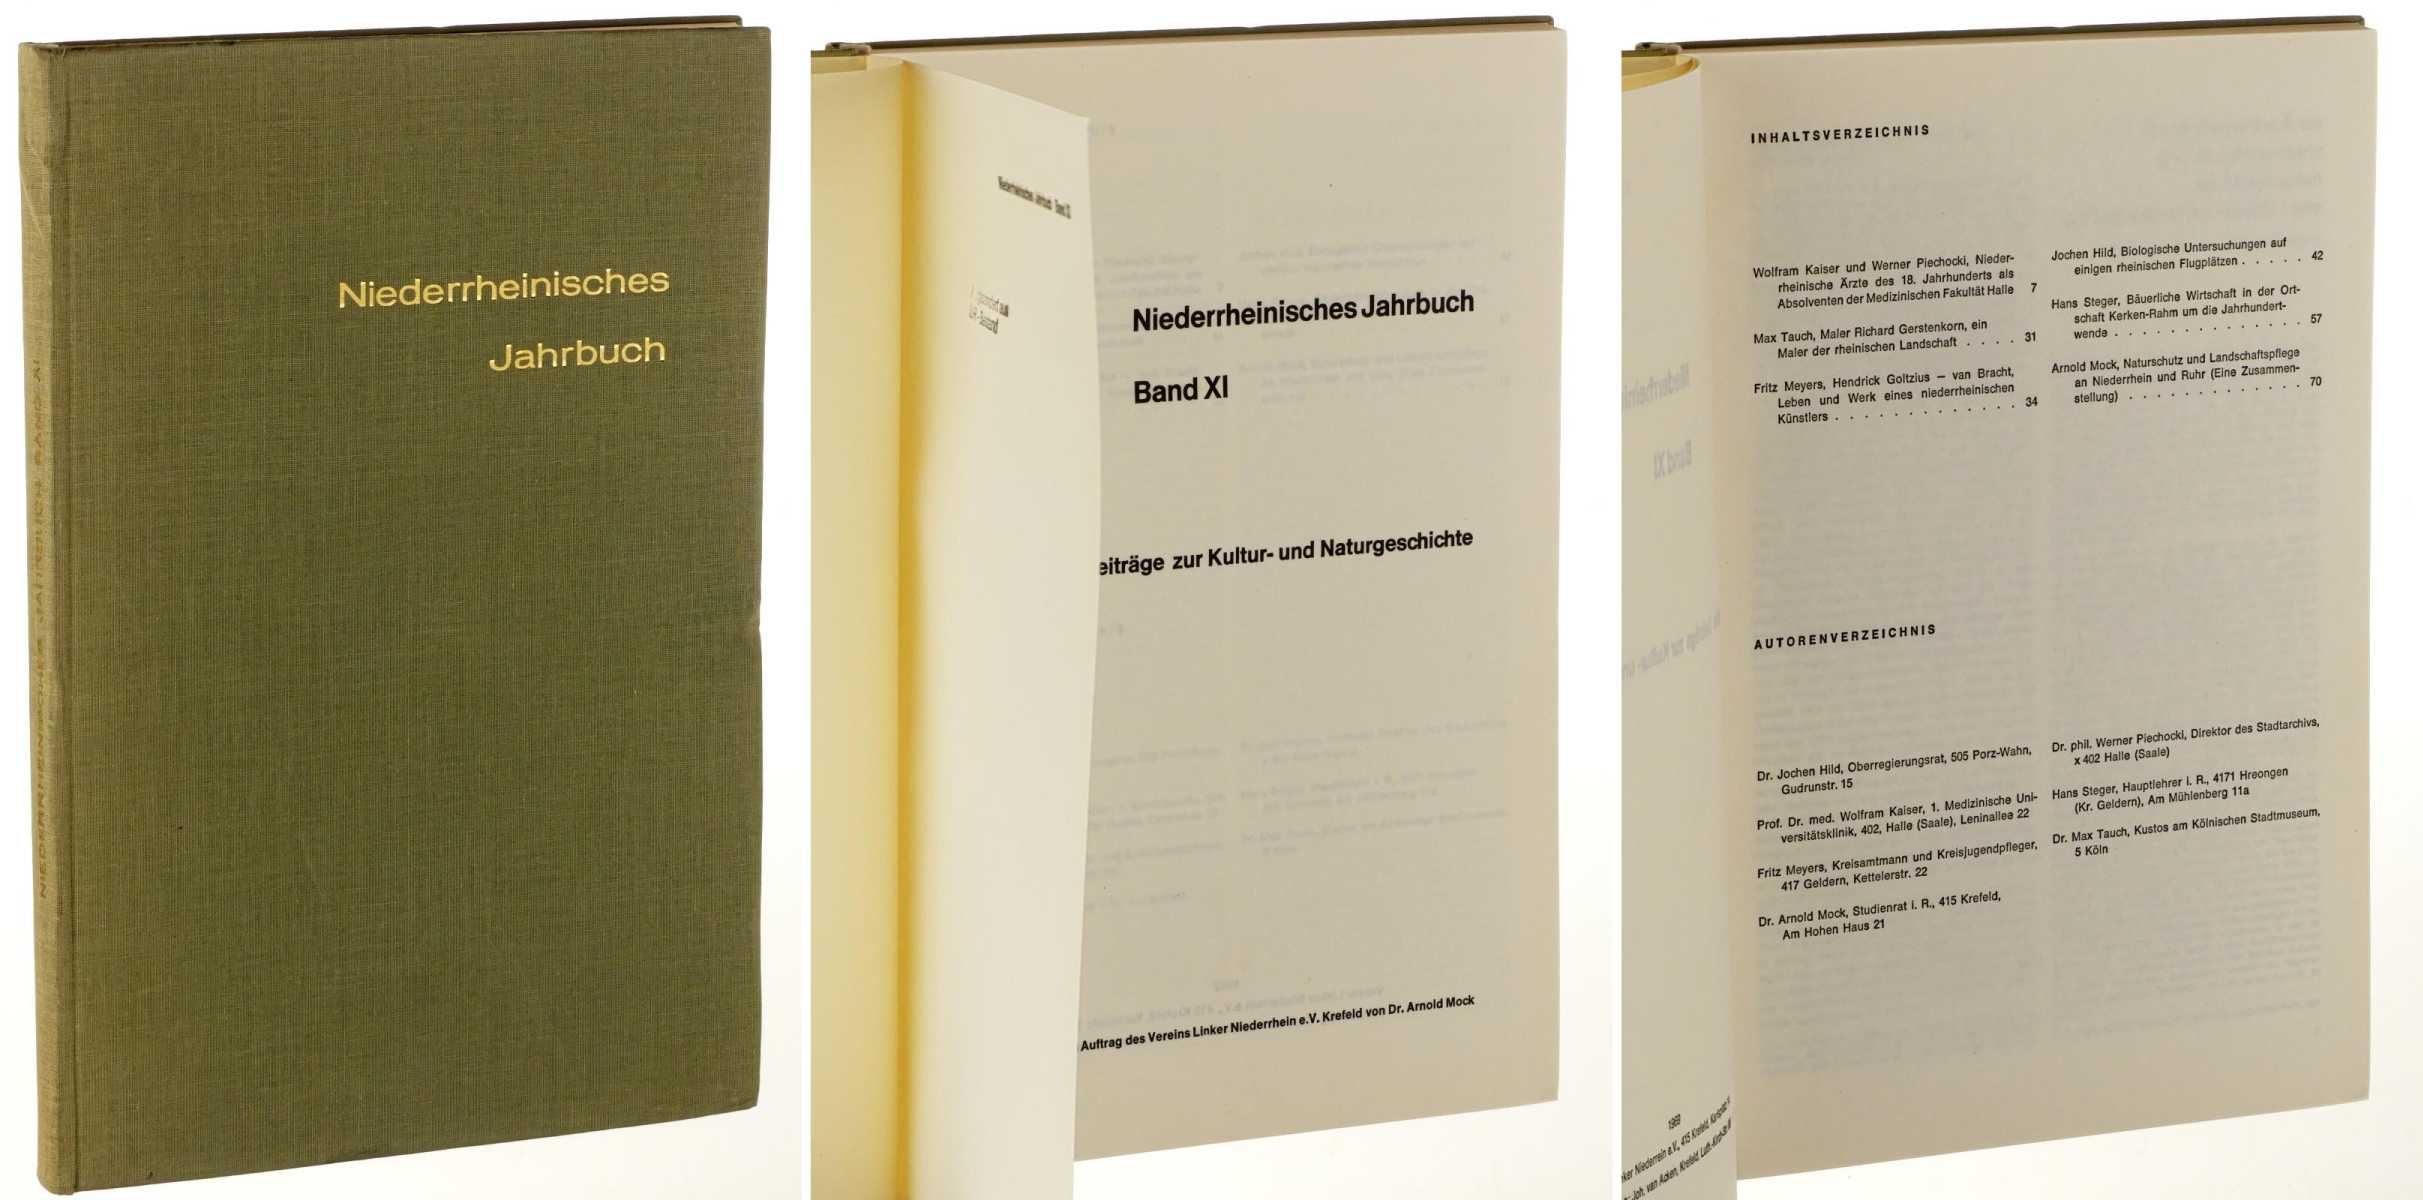   Niederrheinisches Jahrbuch. Band XI: Vermischte Beiträge zur Kultur- und Naturgeschichte. Hrsg.  ... von Arnold Mock. 